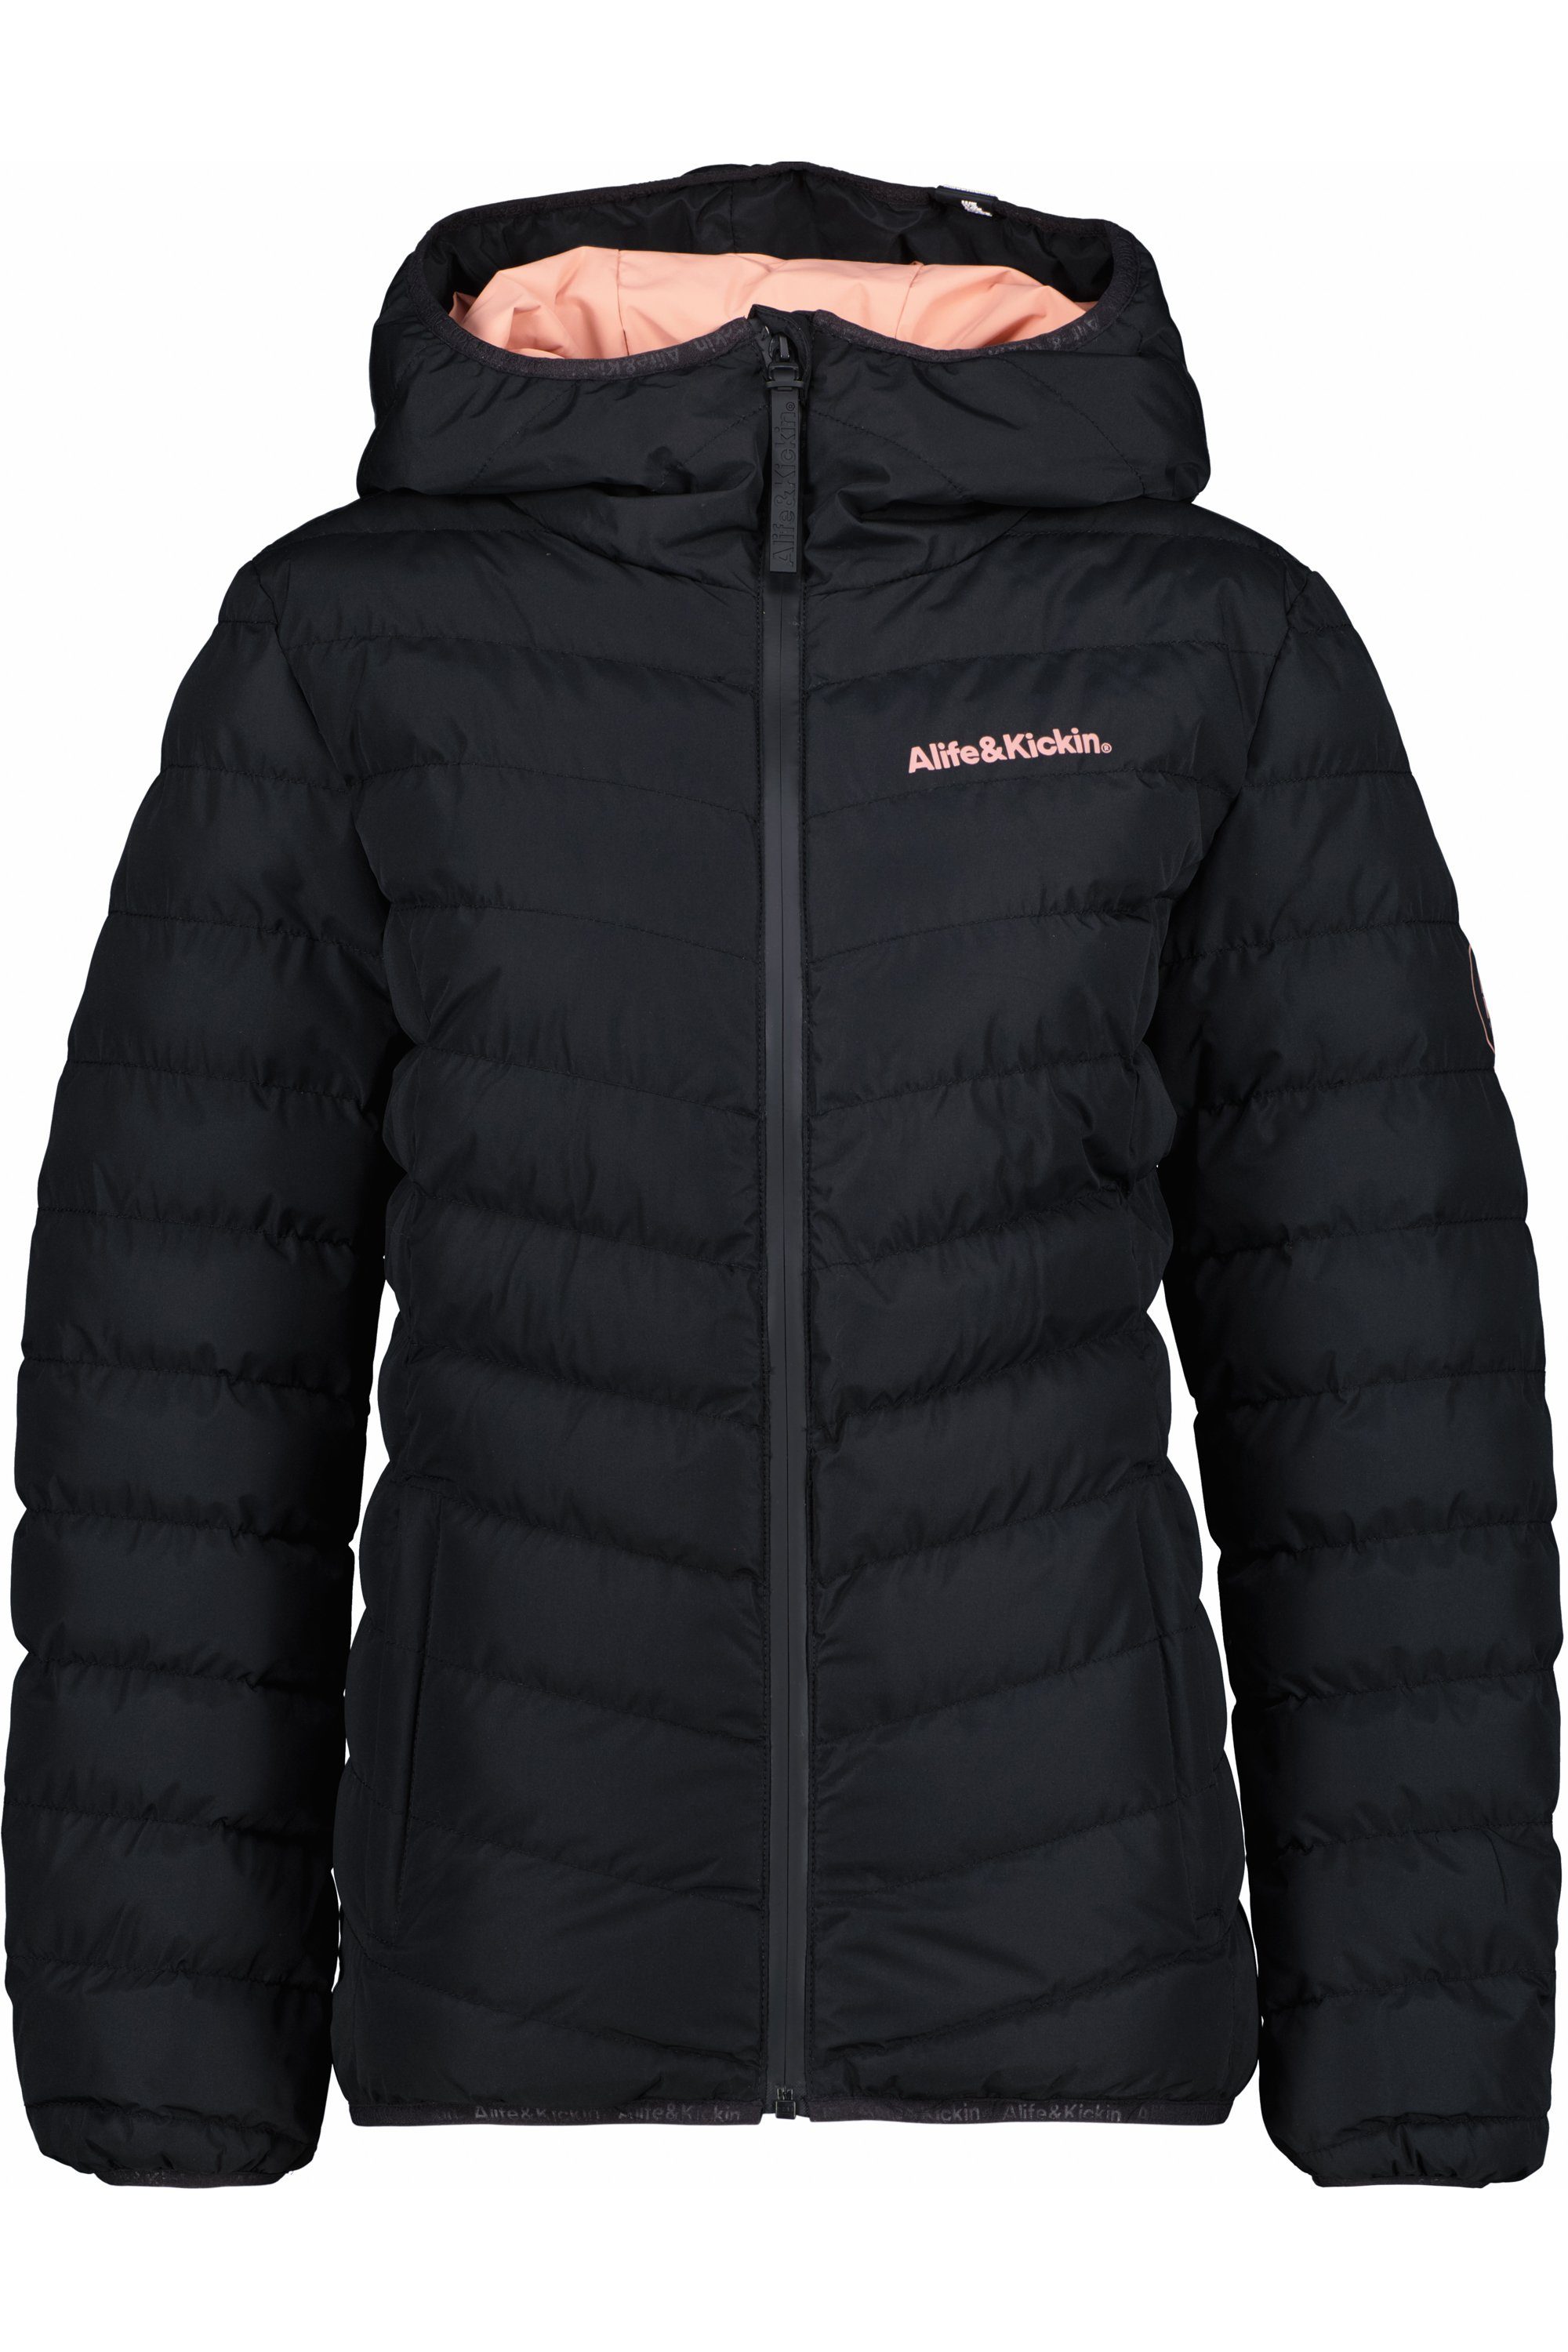 A gefütterte Damen Winterjacke, RabeaAK Winterjacke Kickin & moonless Alife Jacke Jacket